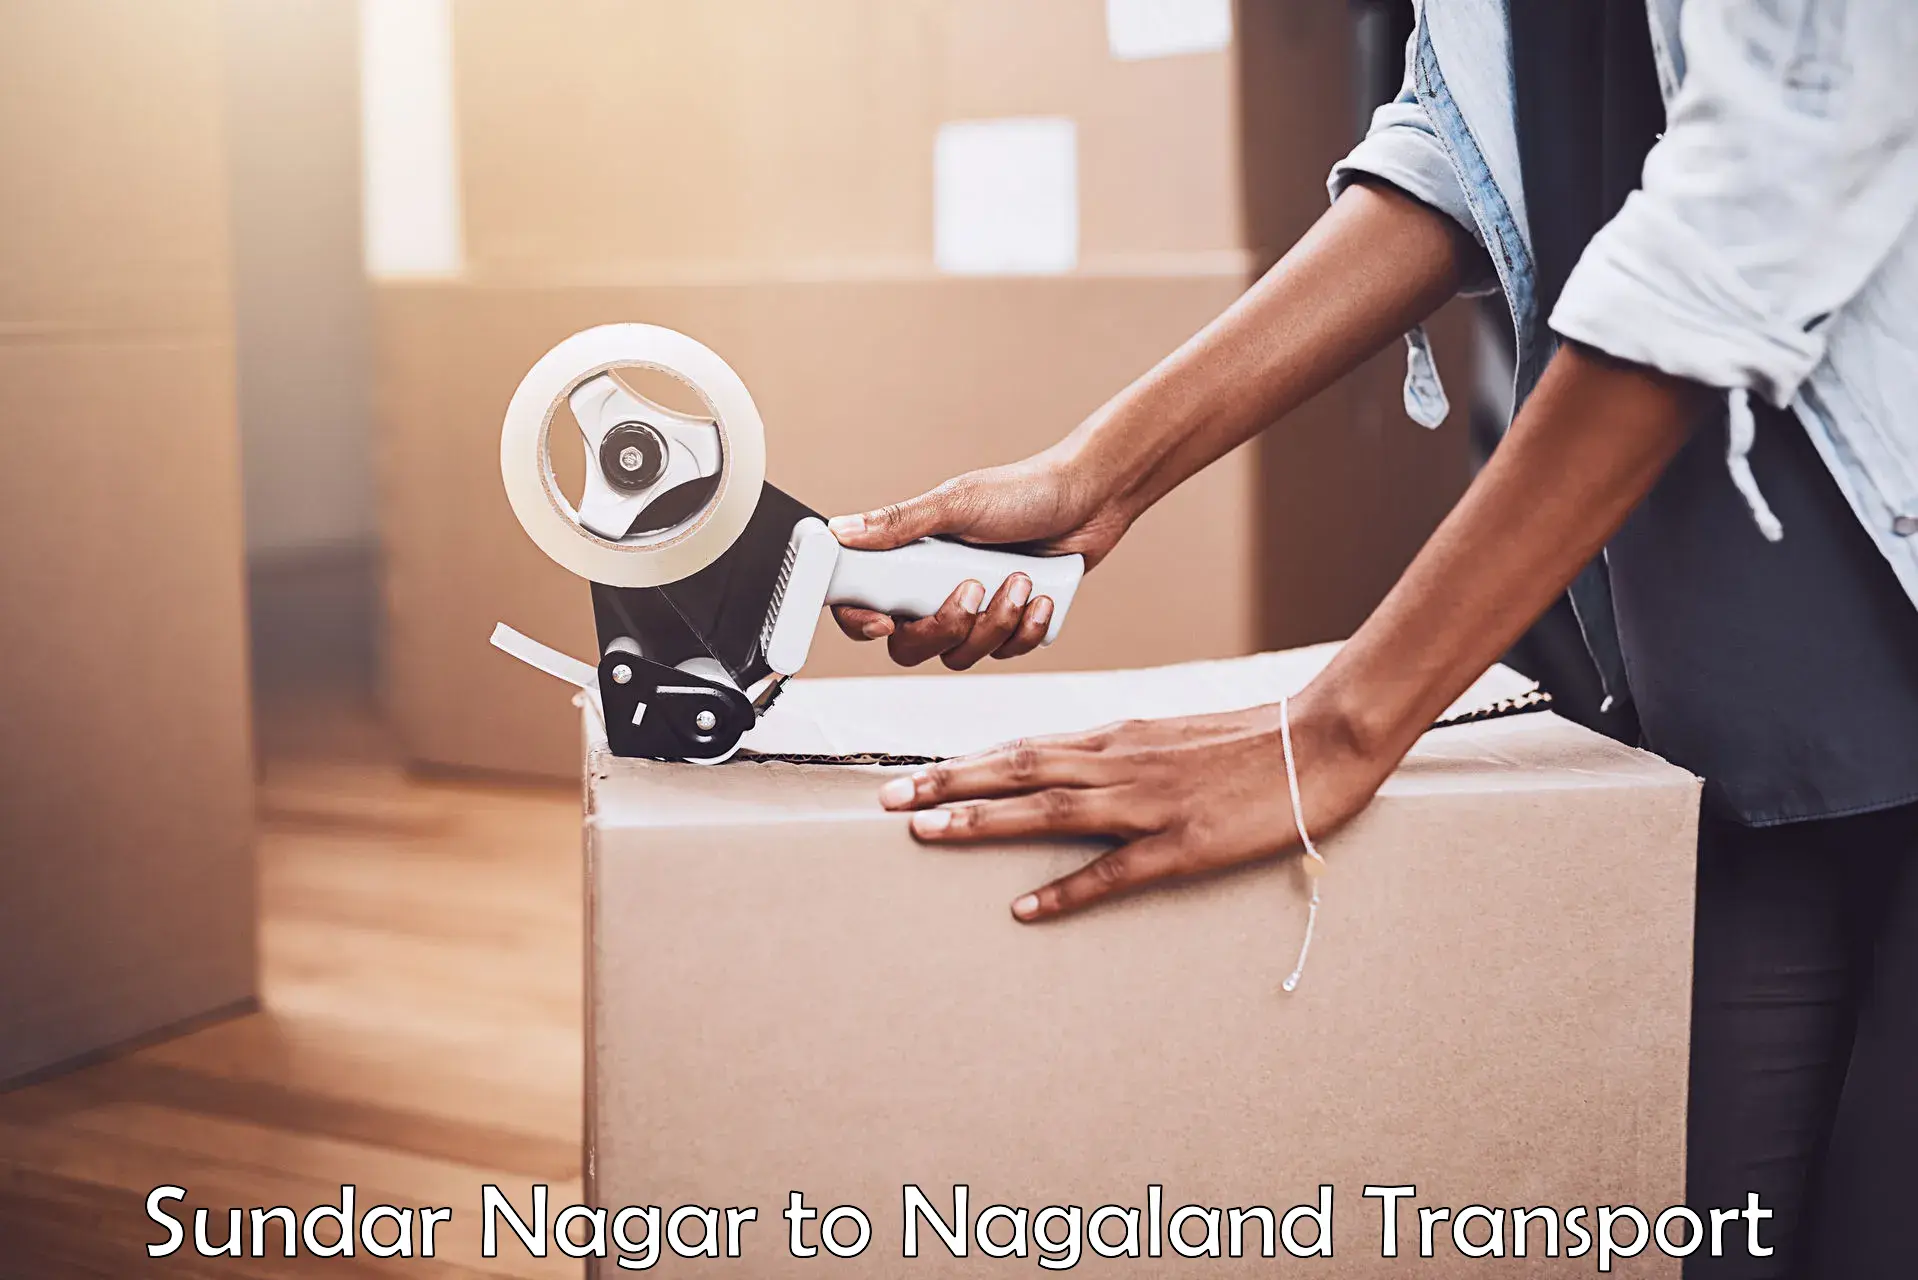 Part load transport service in India Sundar Nagar to Nagaland